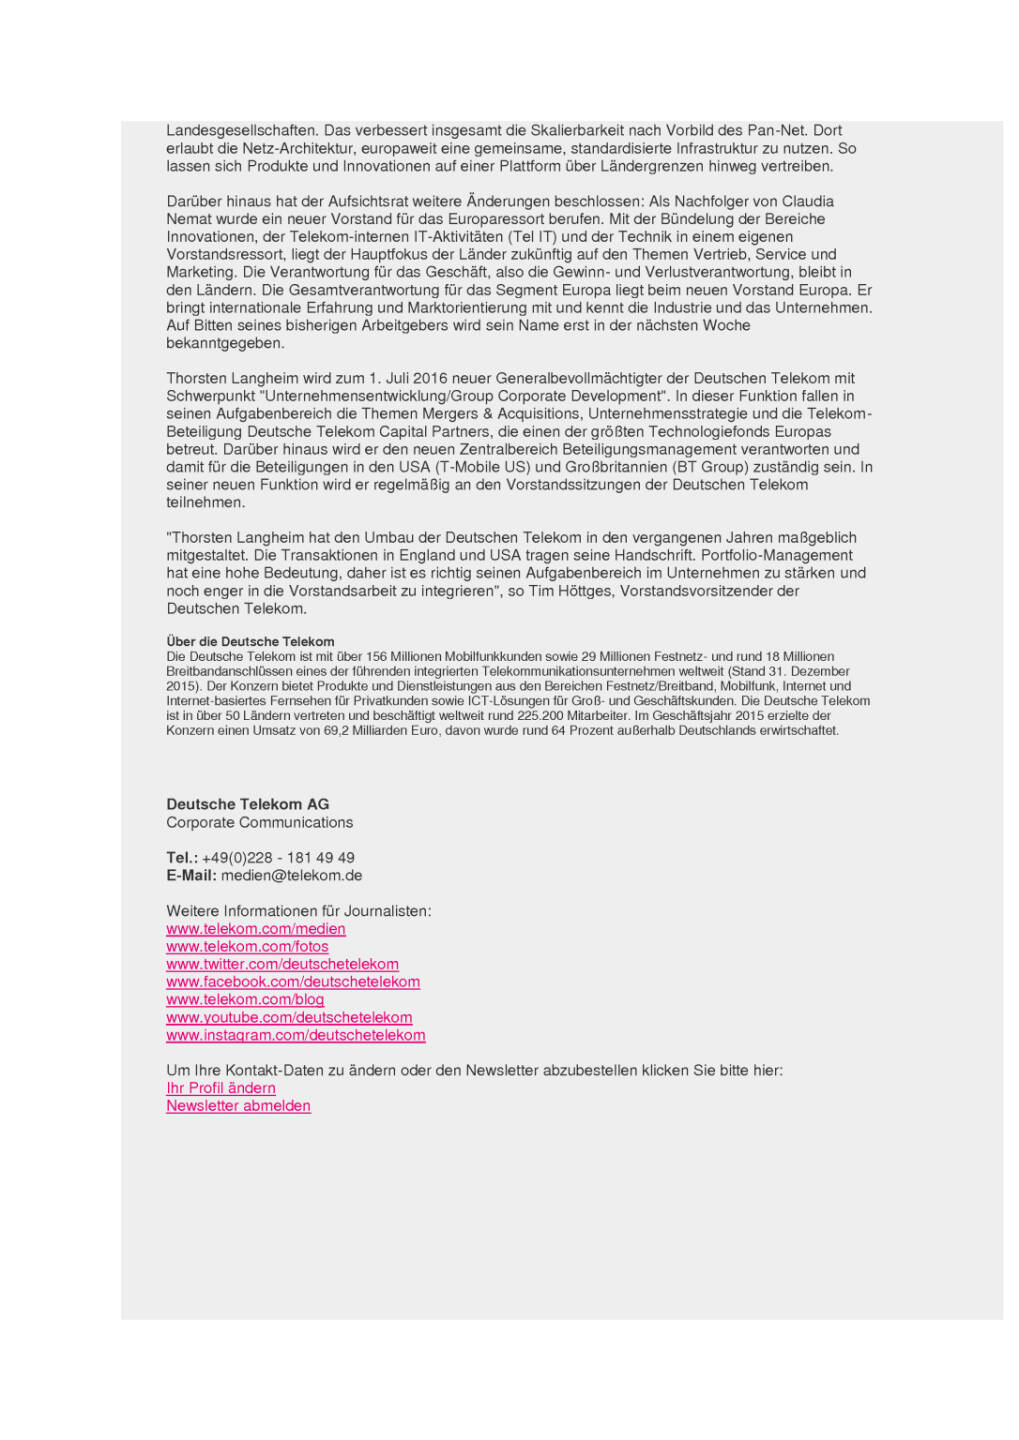 Deutsche Telekom baut Konzernvorstand um, Seite 2/2, komplettes Dokument unter http://boerse-social.com/static/uploads/file_1315_deutsche_telekom_baut_konzernvorstand_um.pdf